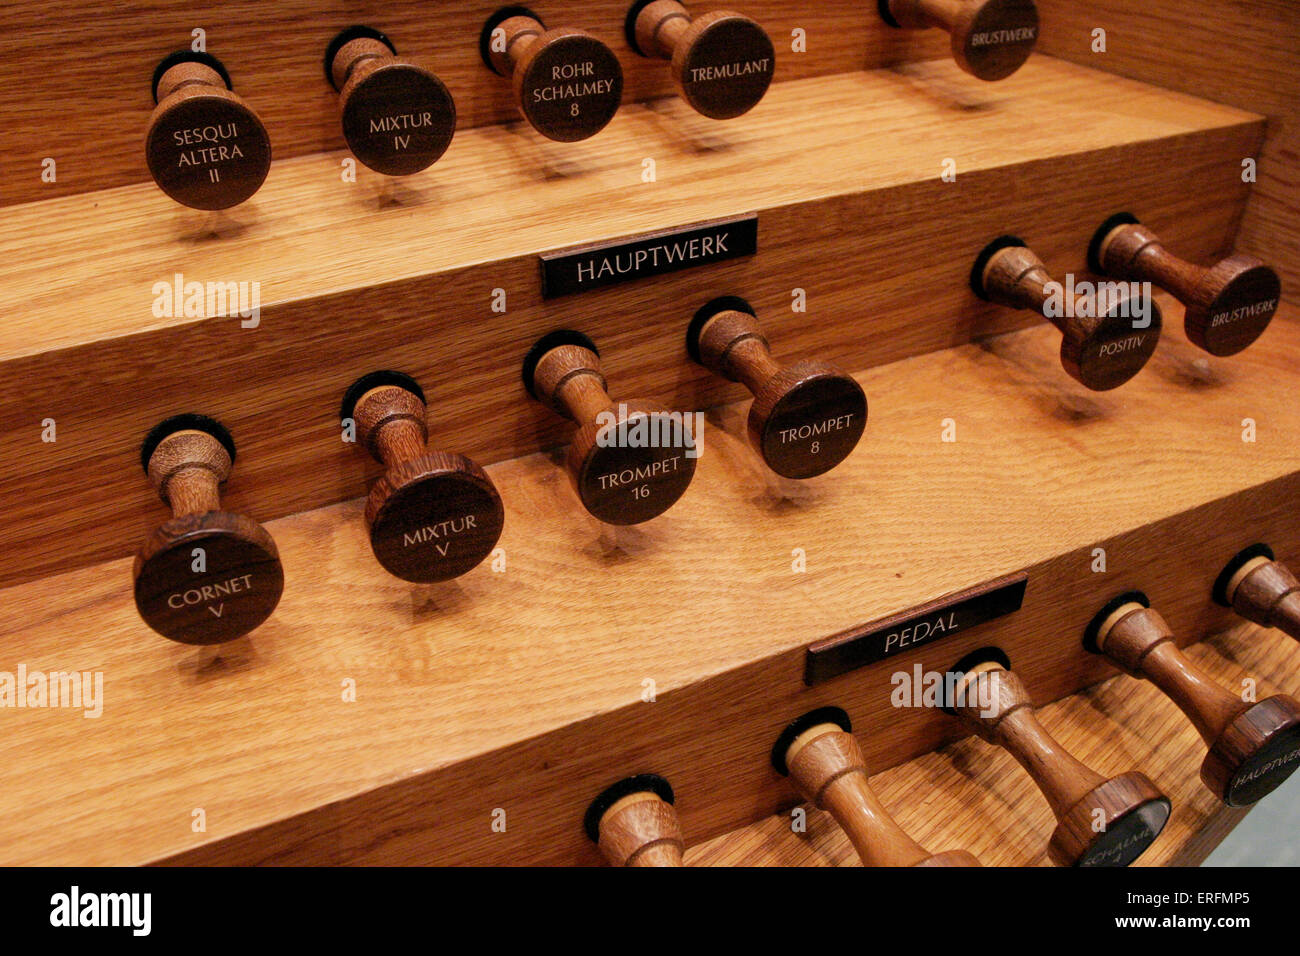 Haltestellen für ein Organ, das aus Holz gebaut. Stockfoto